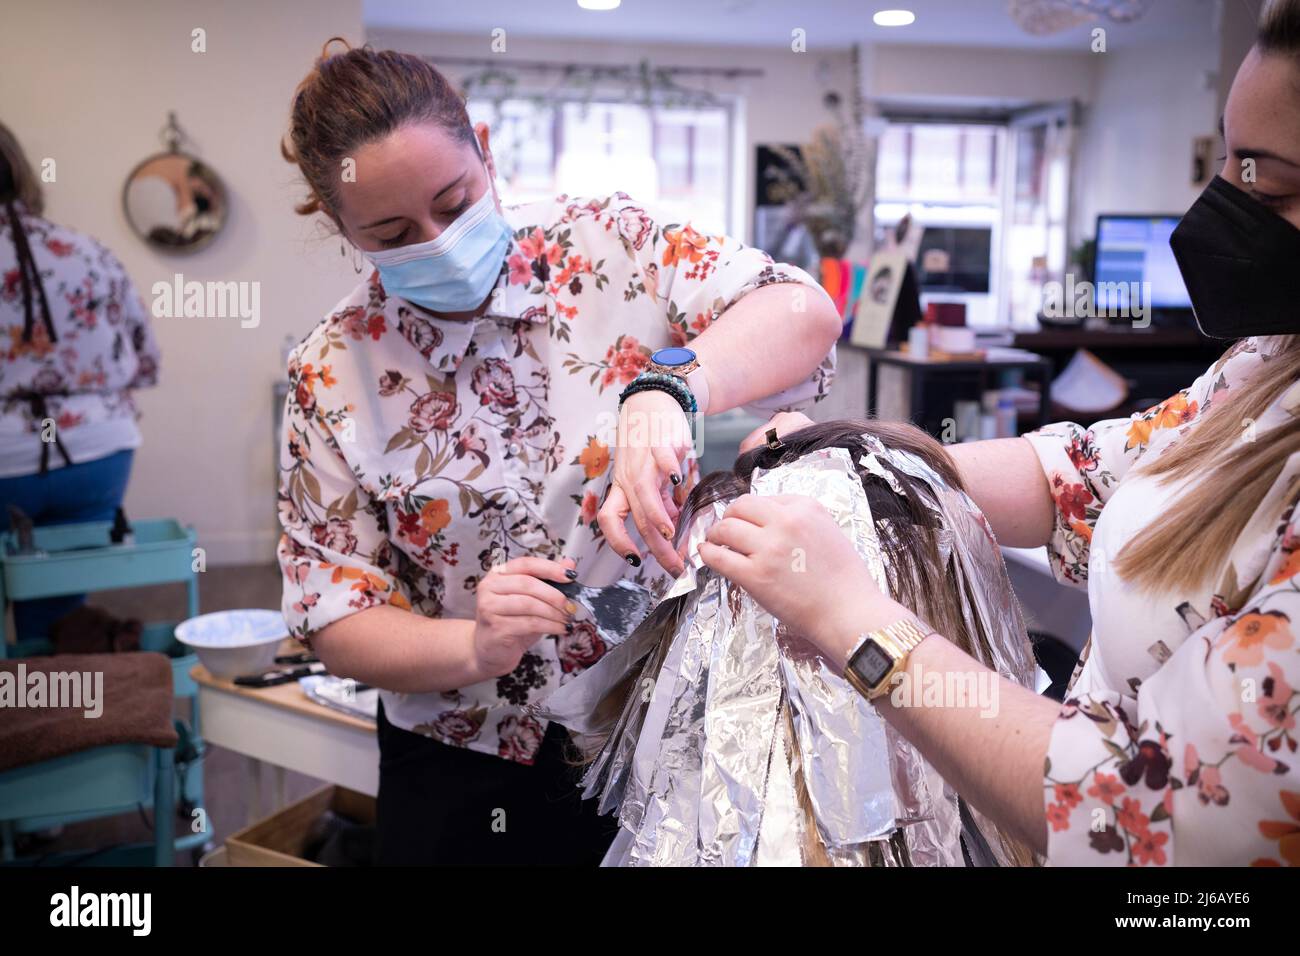 Donna tinge i capelli in un barbiere, il processo di tintura i capelli con la lamina. Foto Stock